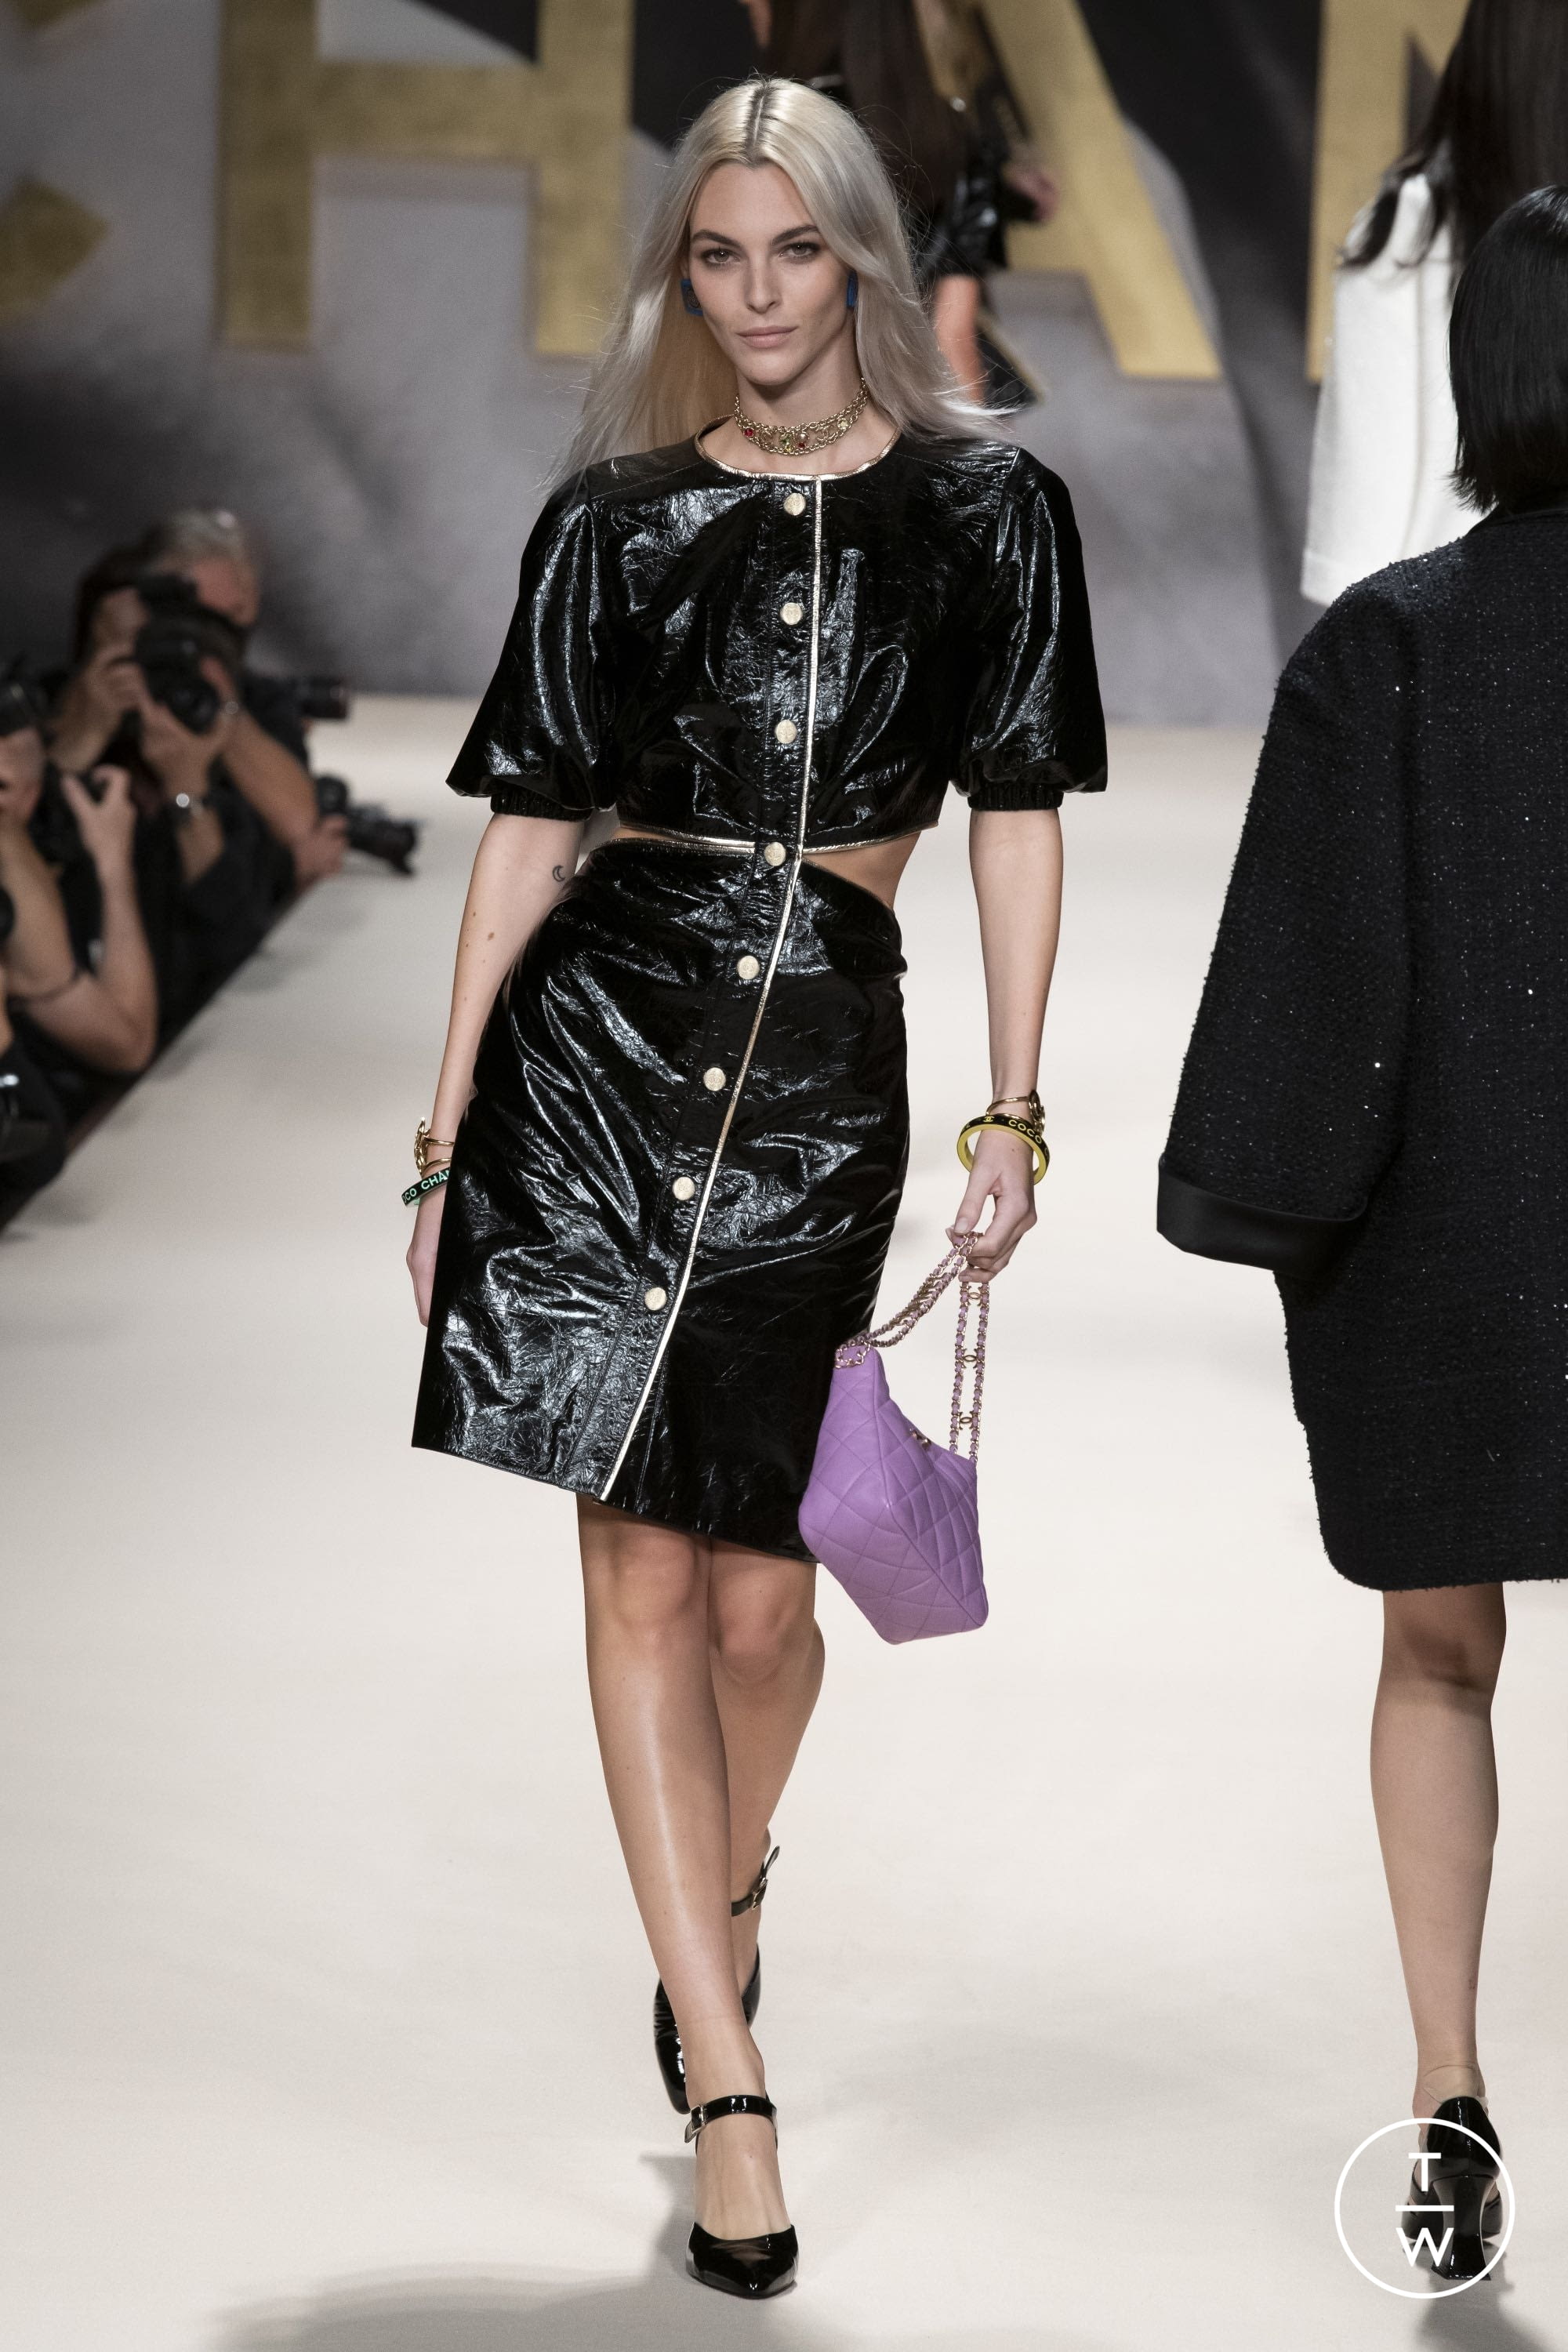 Miu Miu SS22 womenswear accessories #13 - Tagwalk: The Fashion